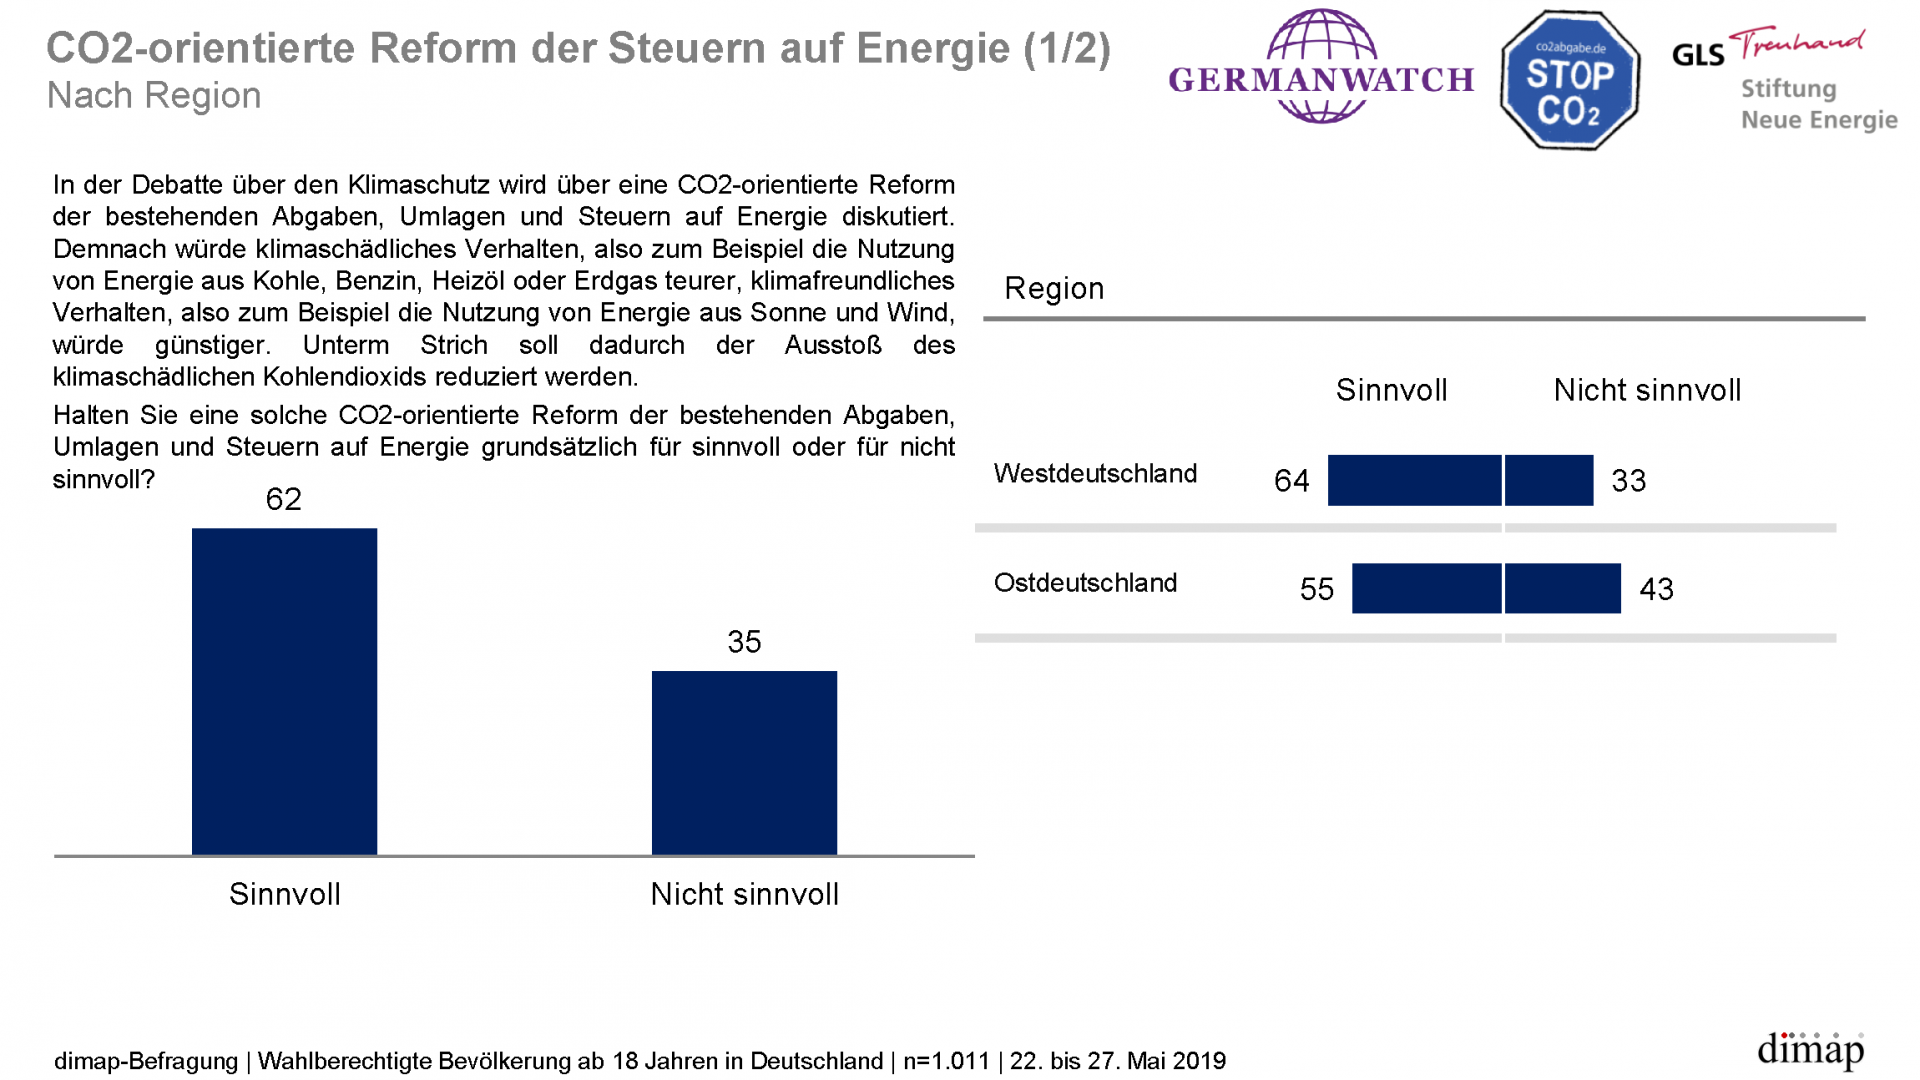 "Meinungen zum Klimaschutz" - ReprÃ¤sentative dimap-Umfrage (22. bis 27. Mai 2019) im Auftrag von Germanwatch, Stiftung Neue Energie und CO2 Abgabe e.V., Ergebnisgrafik 13 von 14